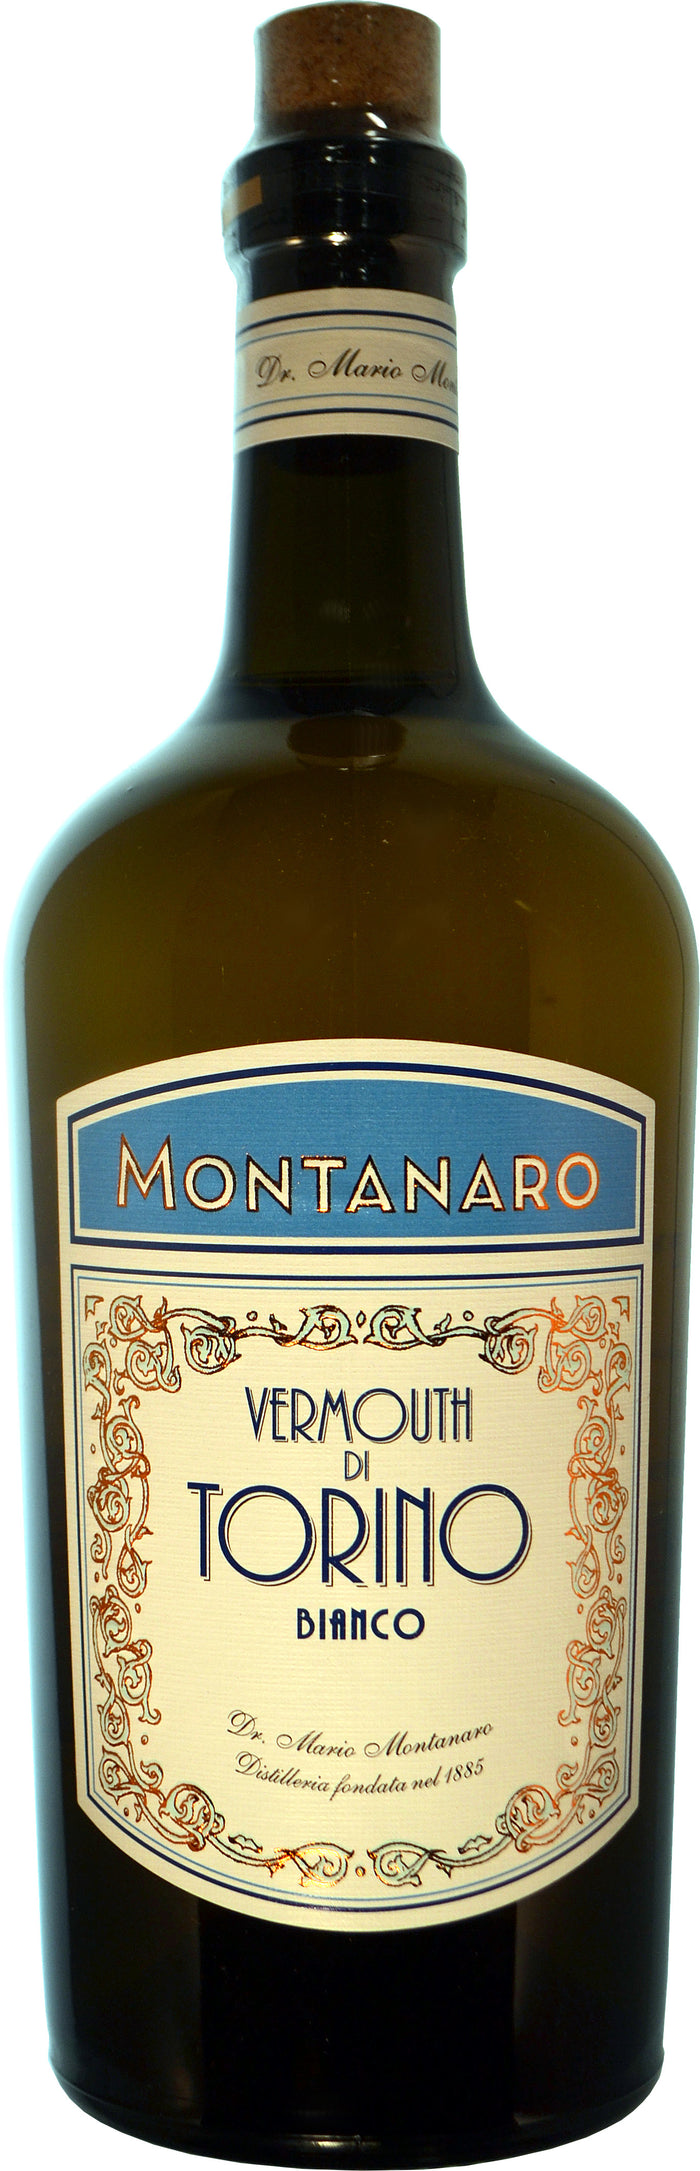 Montanaro Vermouth di Torino Bianco